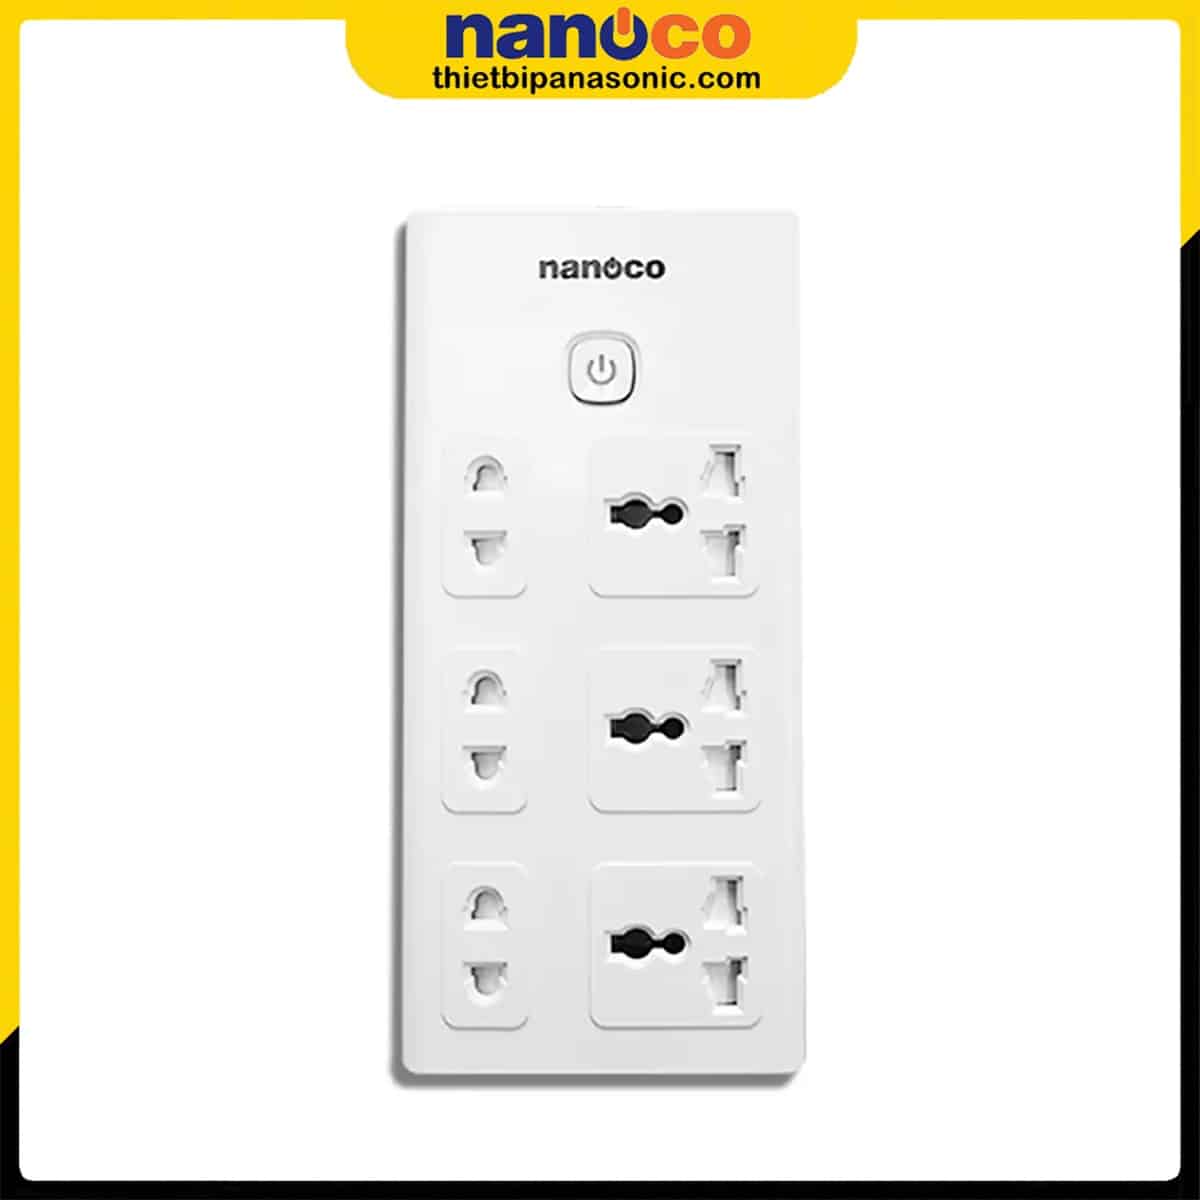 Ổ cắm có dây Nanoco NES3332-3 có thiết kế chắc chắn cùng màu trắng thanh lịch